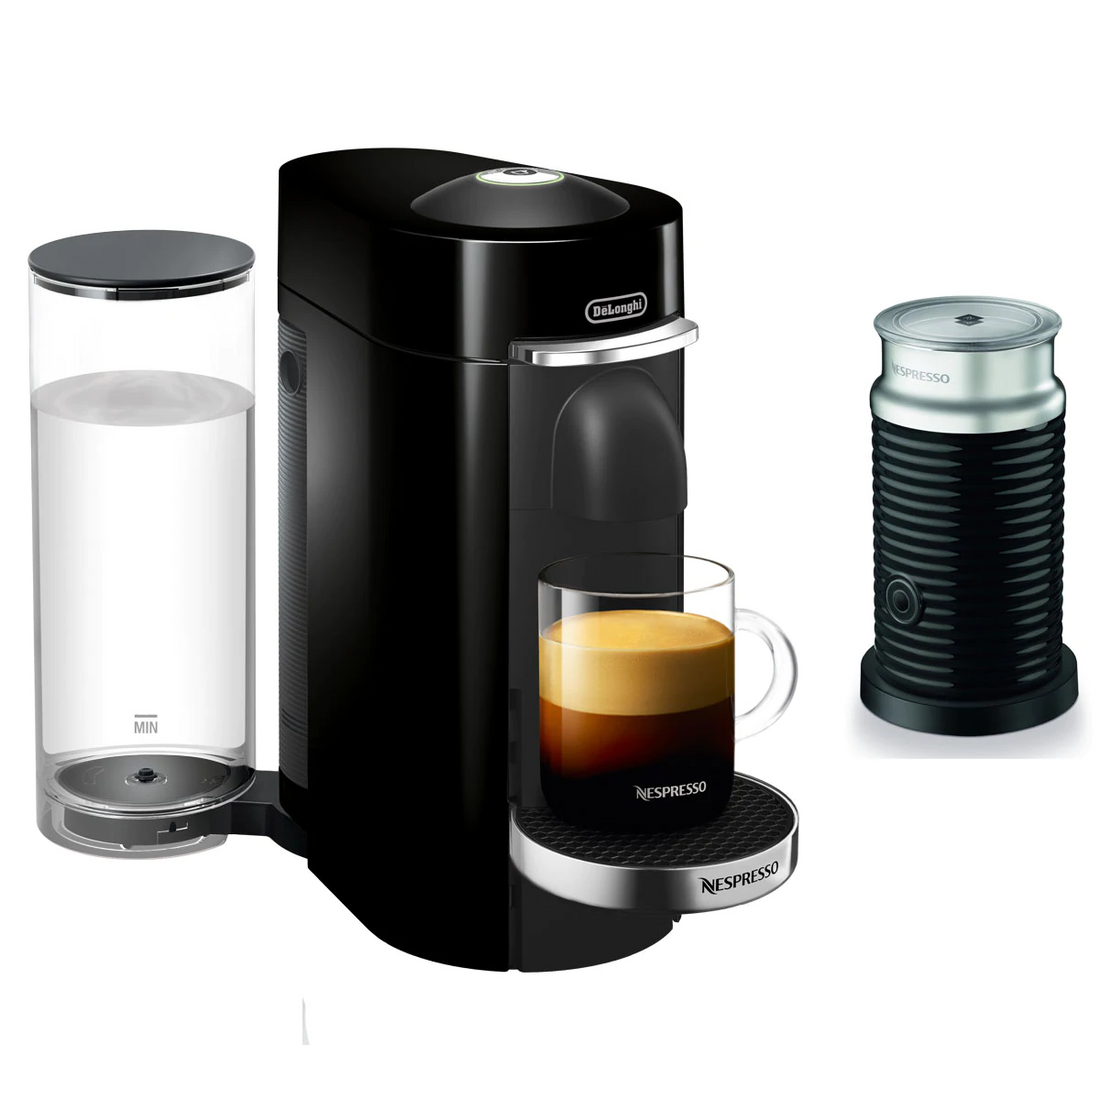 Nespresso Vertuo Plus Deluxe Espresso Machine by DeLonghi with Aeroccino - Black